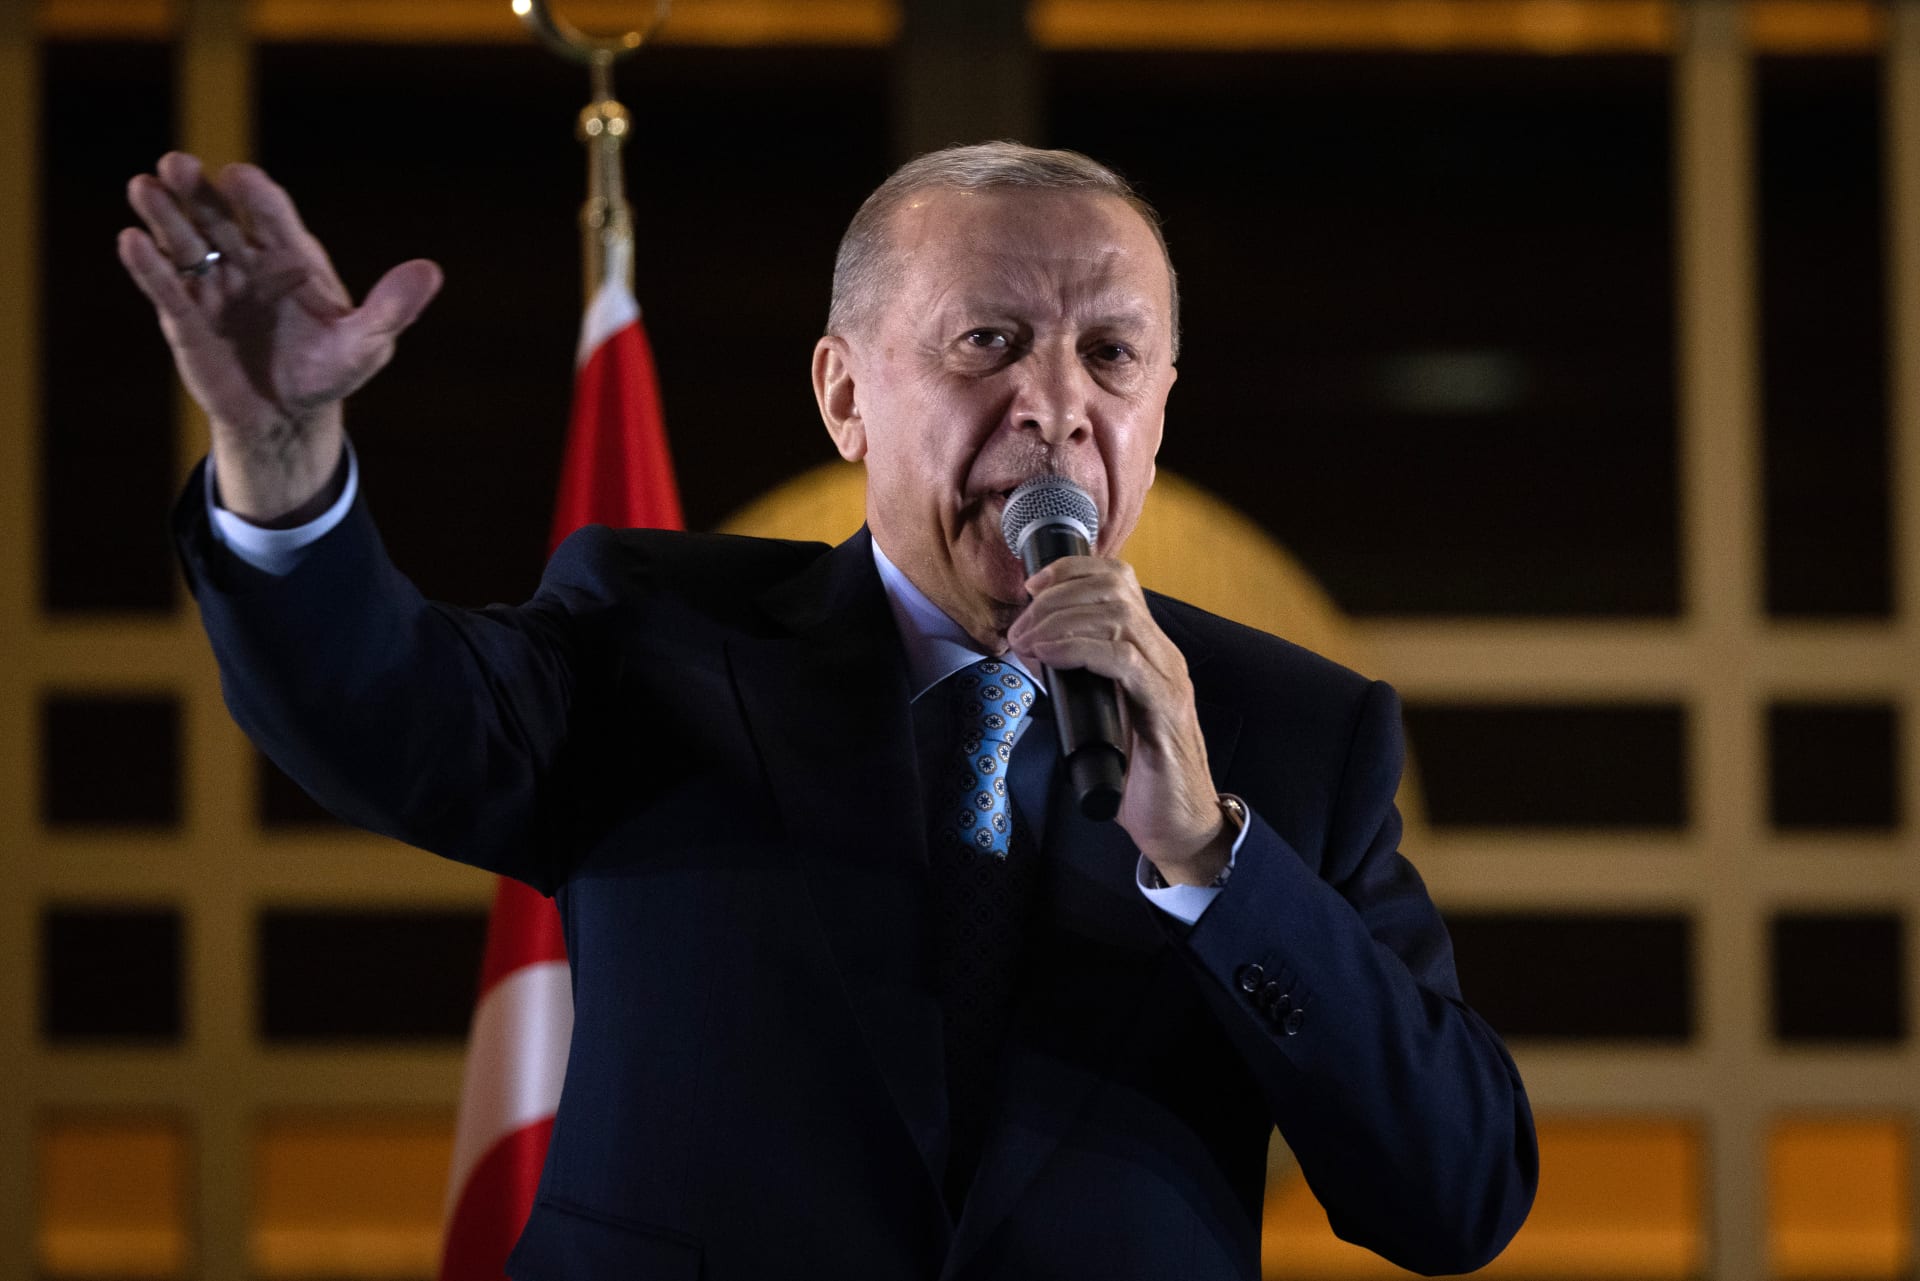 أردوغان يصف إسرائيل بـ"دولة إرهاب" ويتعهد بالعمل على "عزلها" دوليا ومحاكمة مسؤوليها